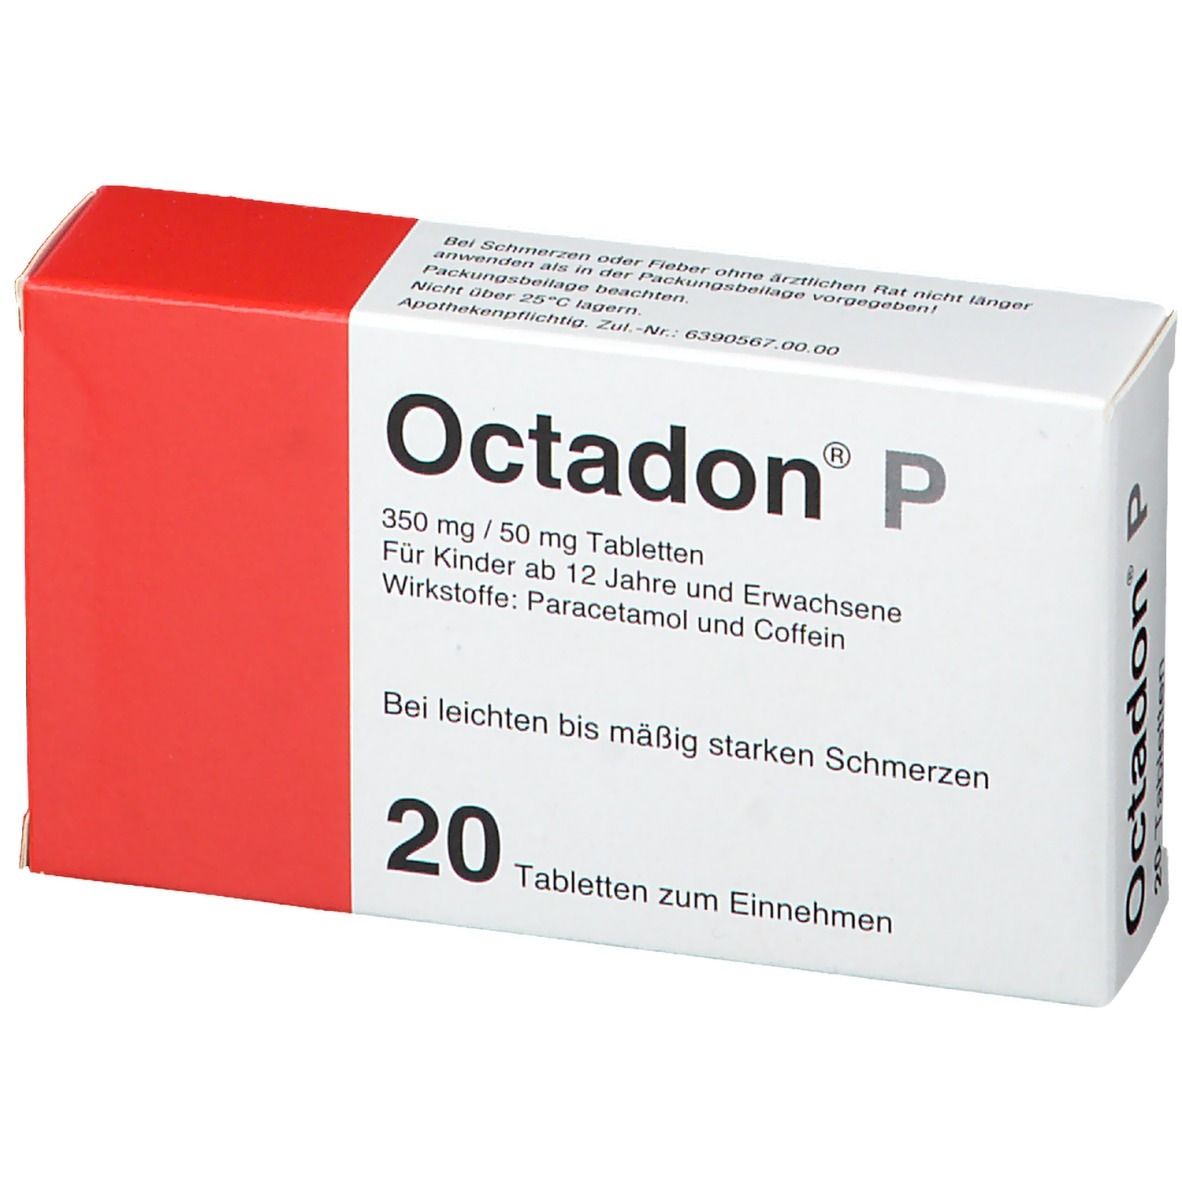 Octadon® P